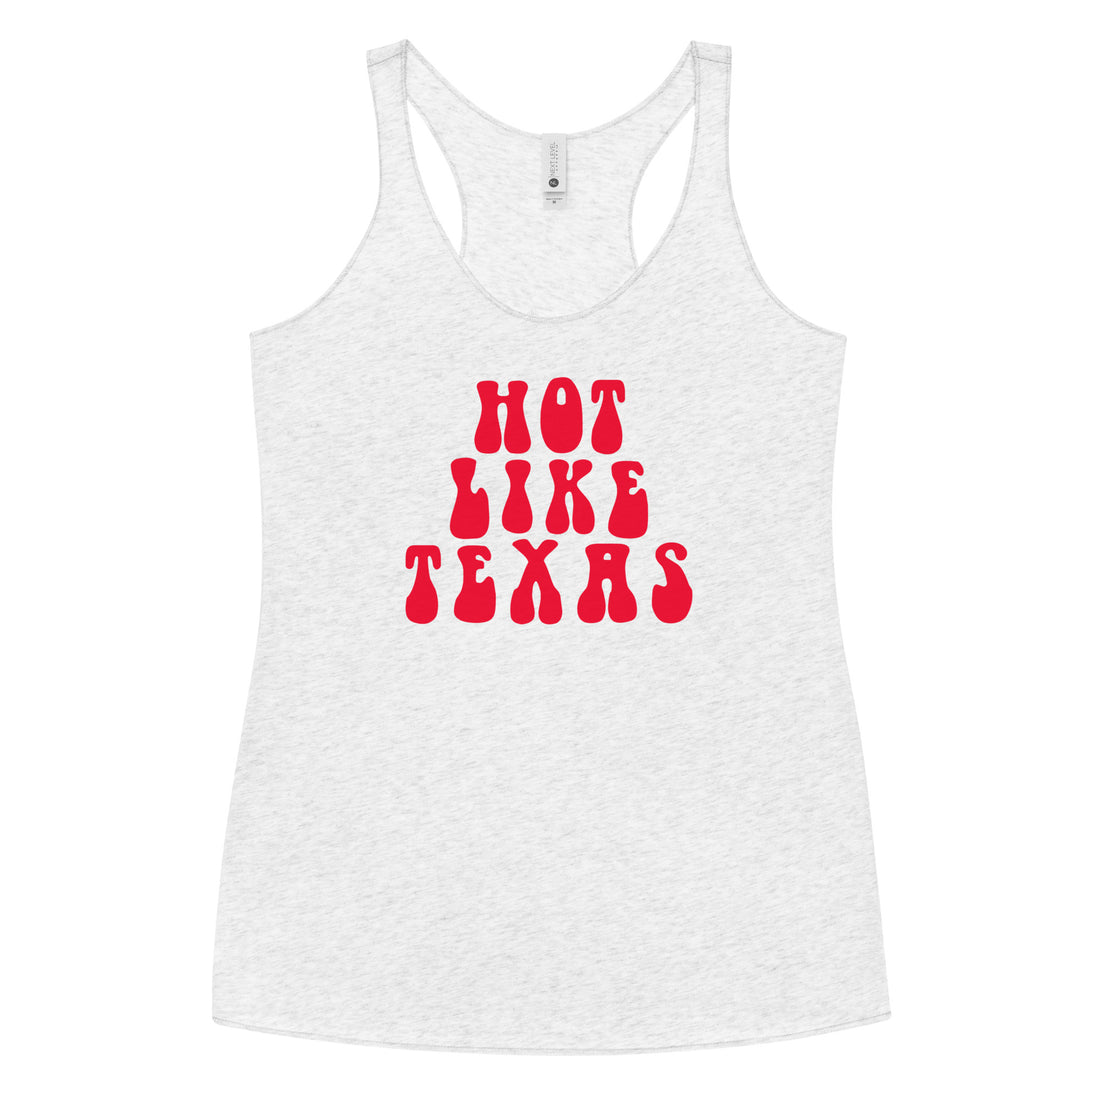 All Tanks – Texas Humor